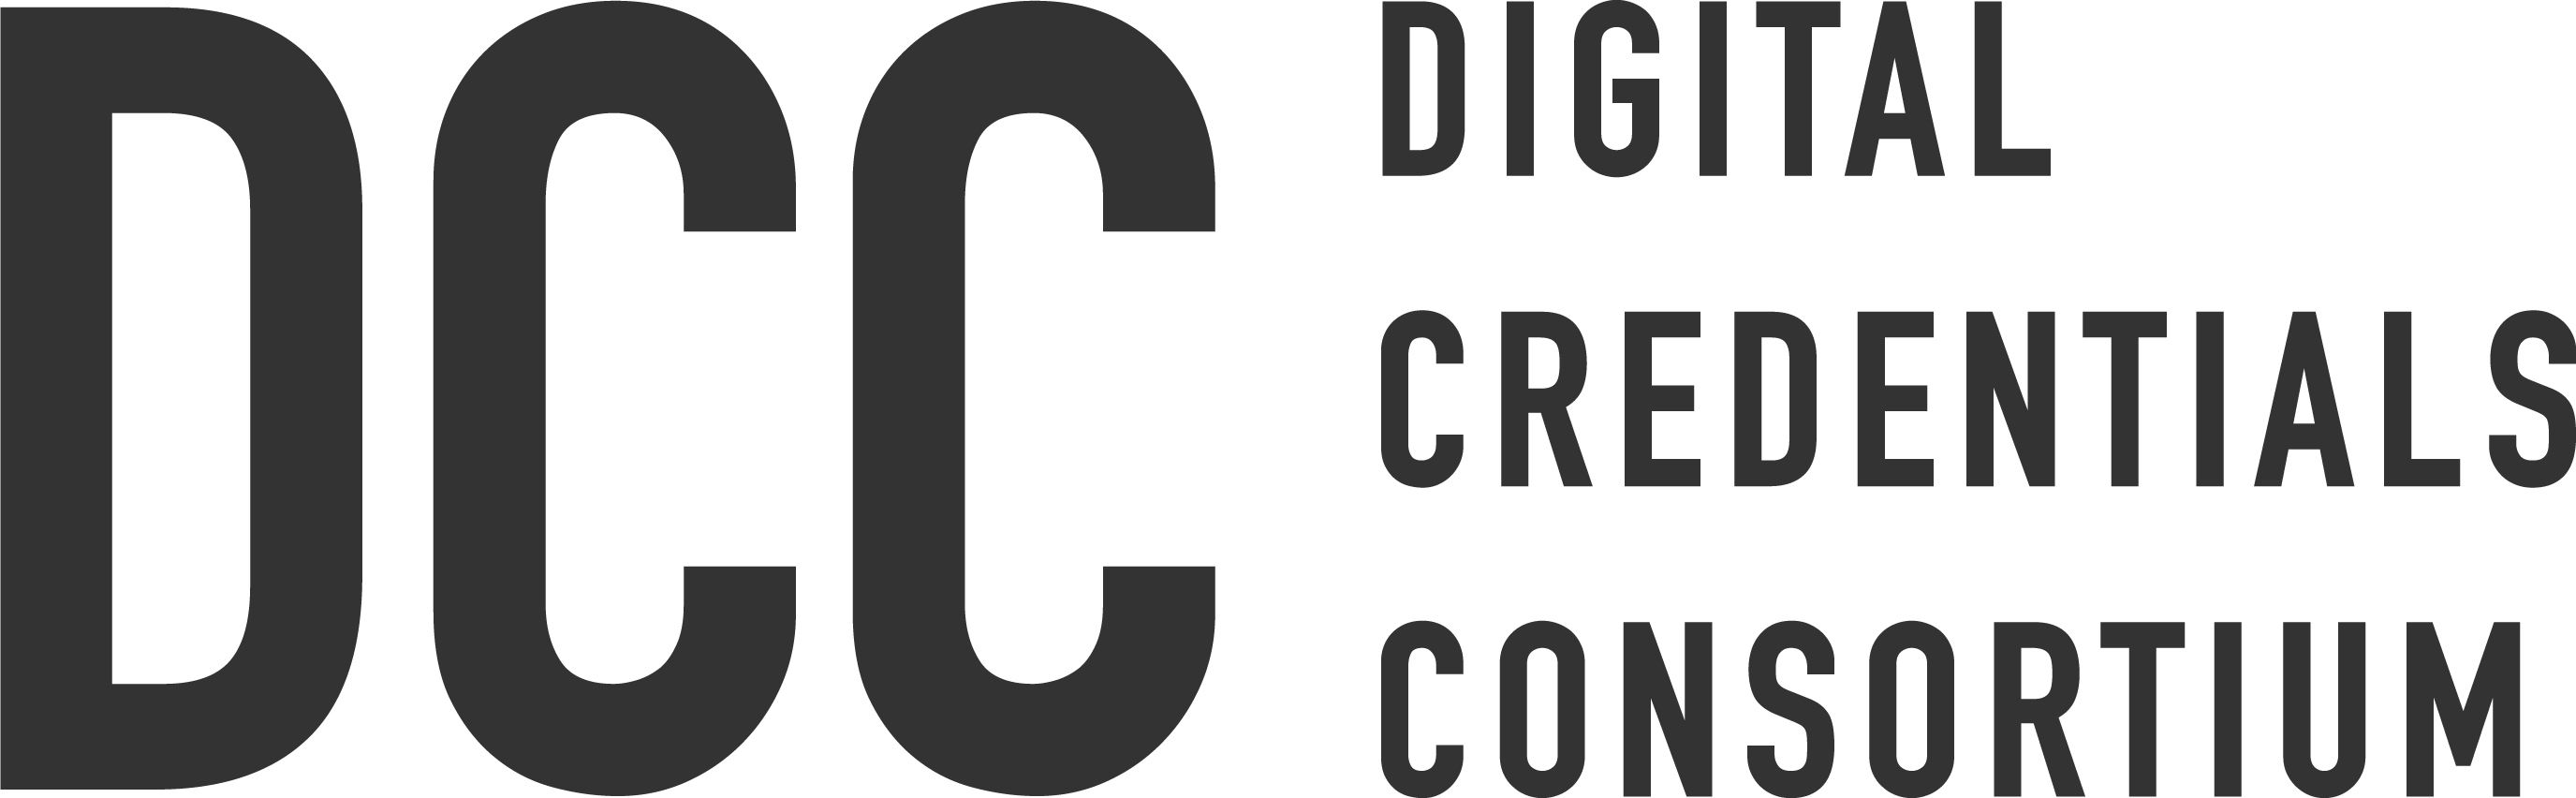 Digital Credentials Consortium logo